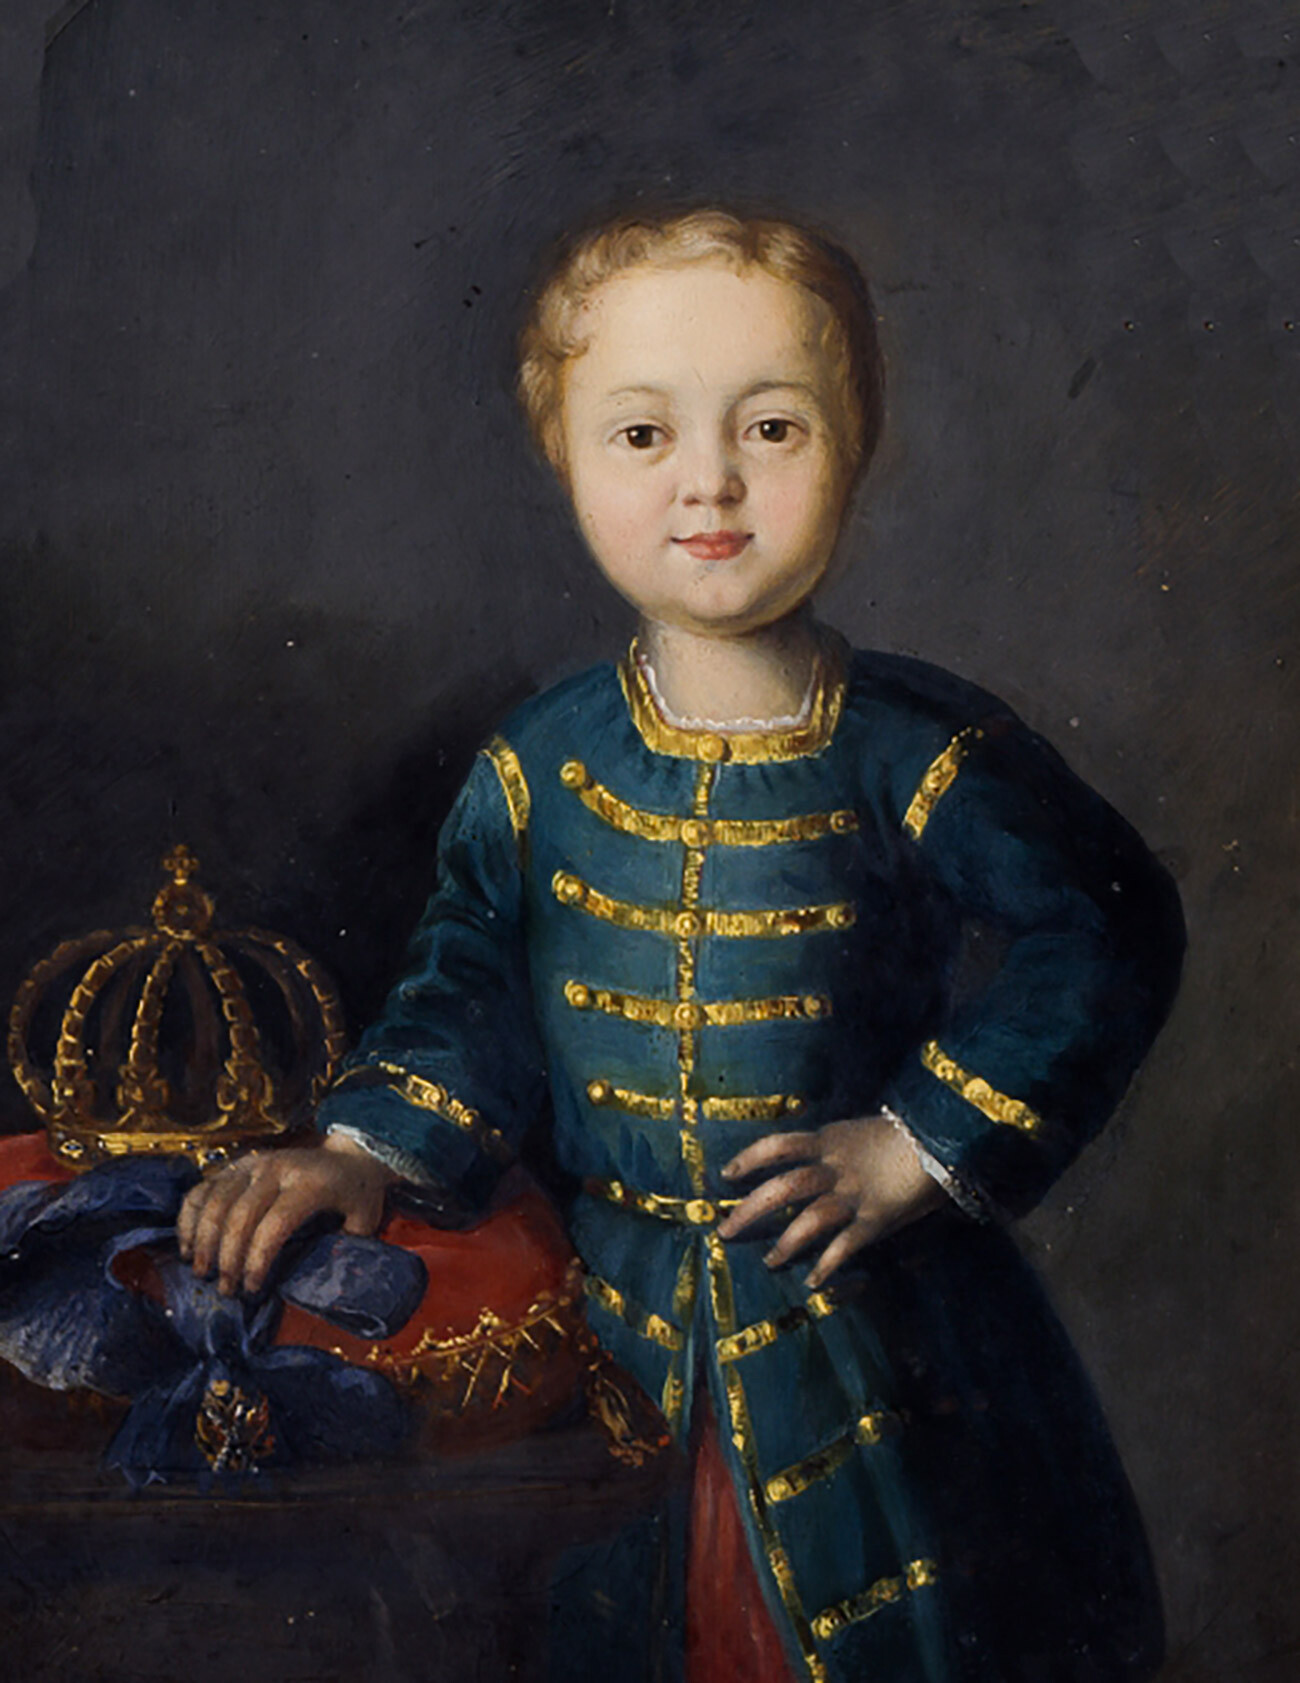 Портрет руског императора Ивана VI Антоновича (1740-1764). 